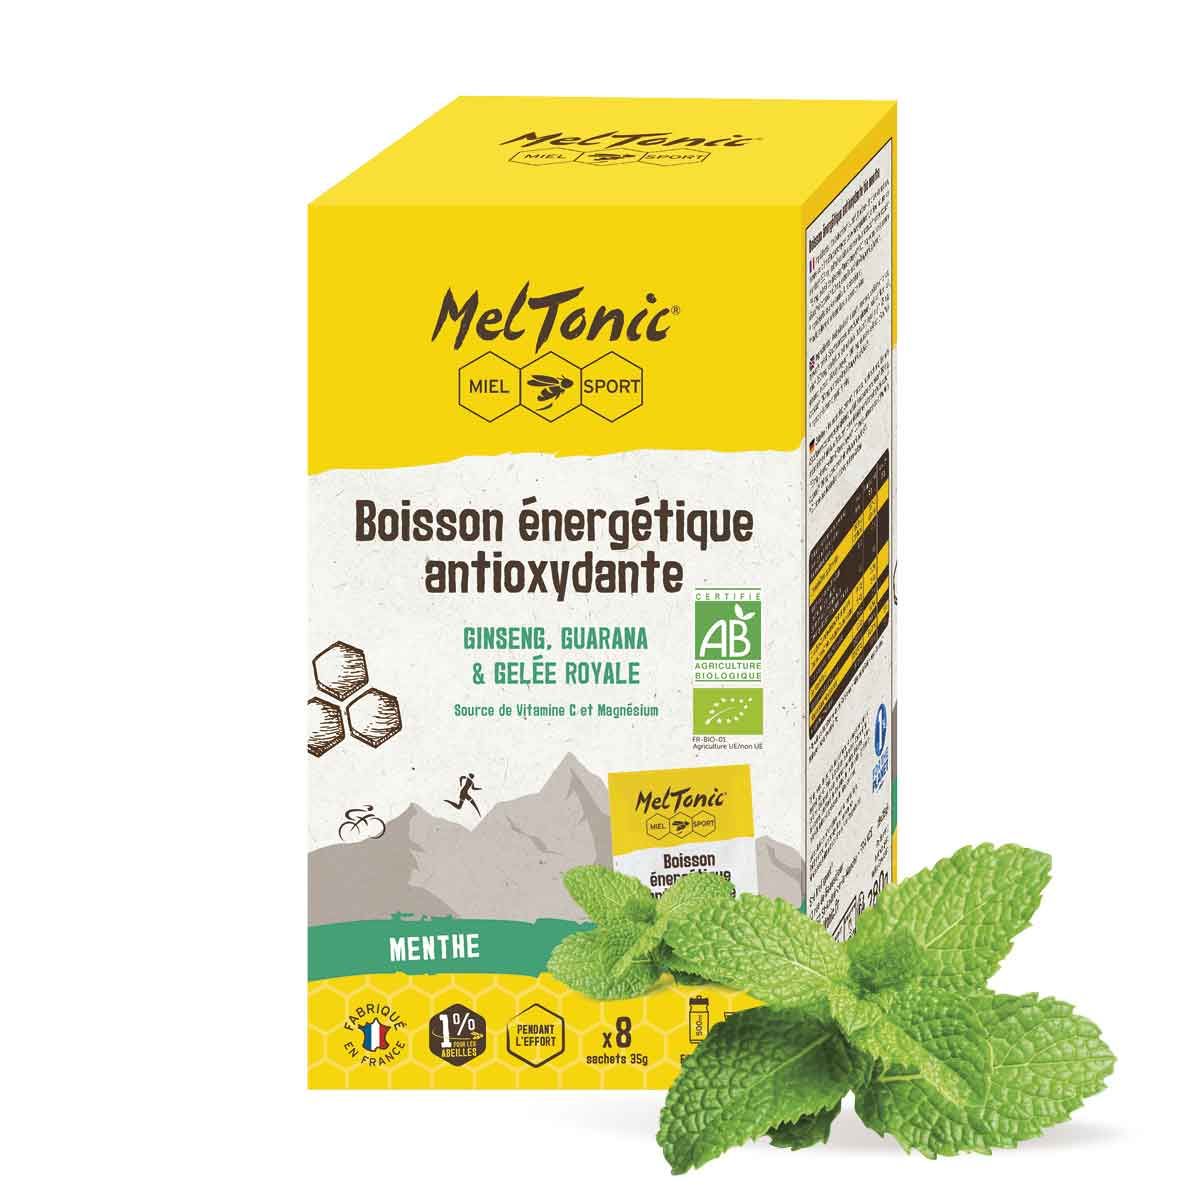 Boisson énergétique antioxydante bio Meltonic x 6 sticks - Menthe